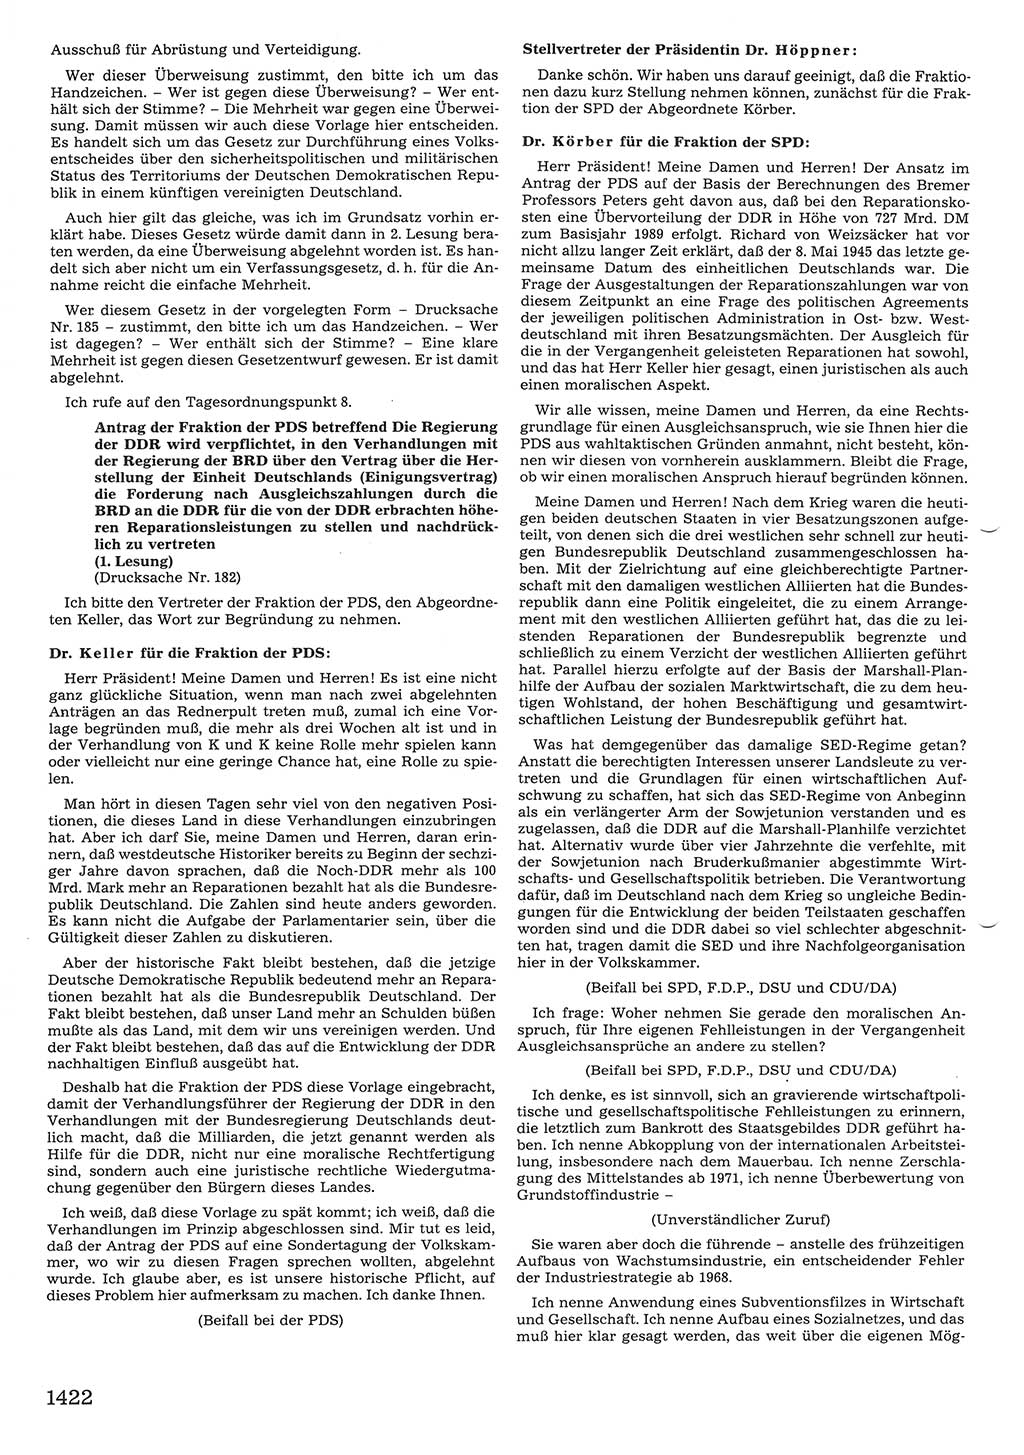 Tagungen der Volkskammer (VK) der Deutschen Demokratischen Republik (DDR), 10. Wahlperiode 1990, Seite 1422 (VK. DDR 10. WP. 1990, Prot. Tg. 1-38, 5.4.-2.10.1990, S. 1422)